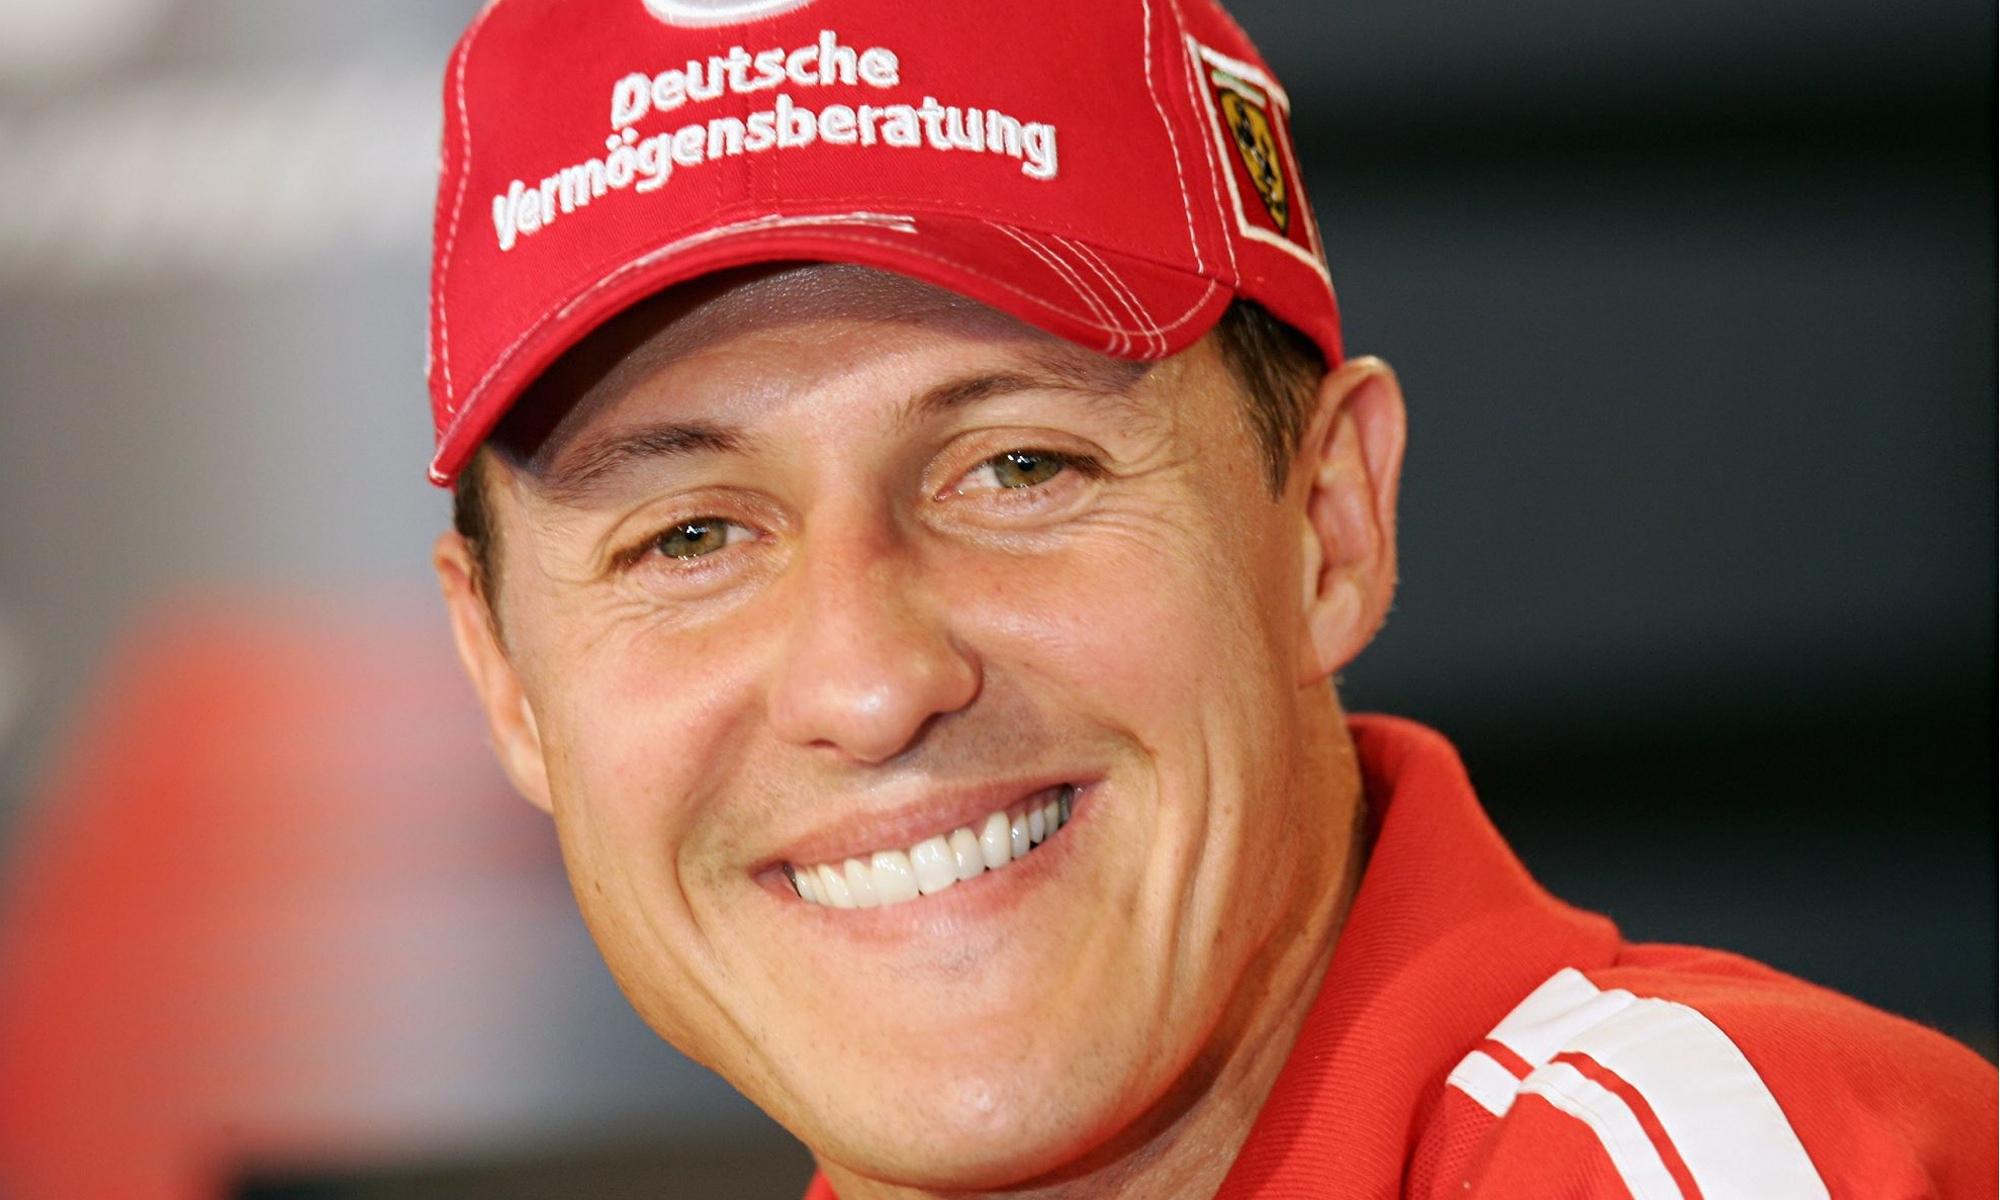 Michael Schumacher a fost externat la nouă luni după accidentul de schi